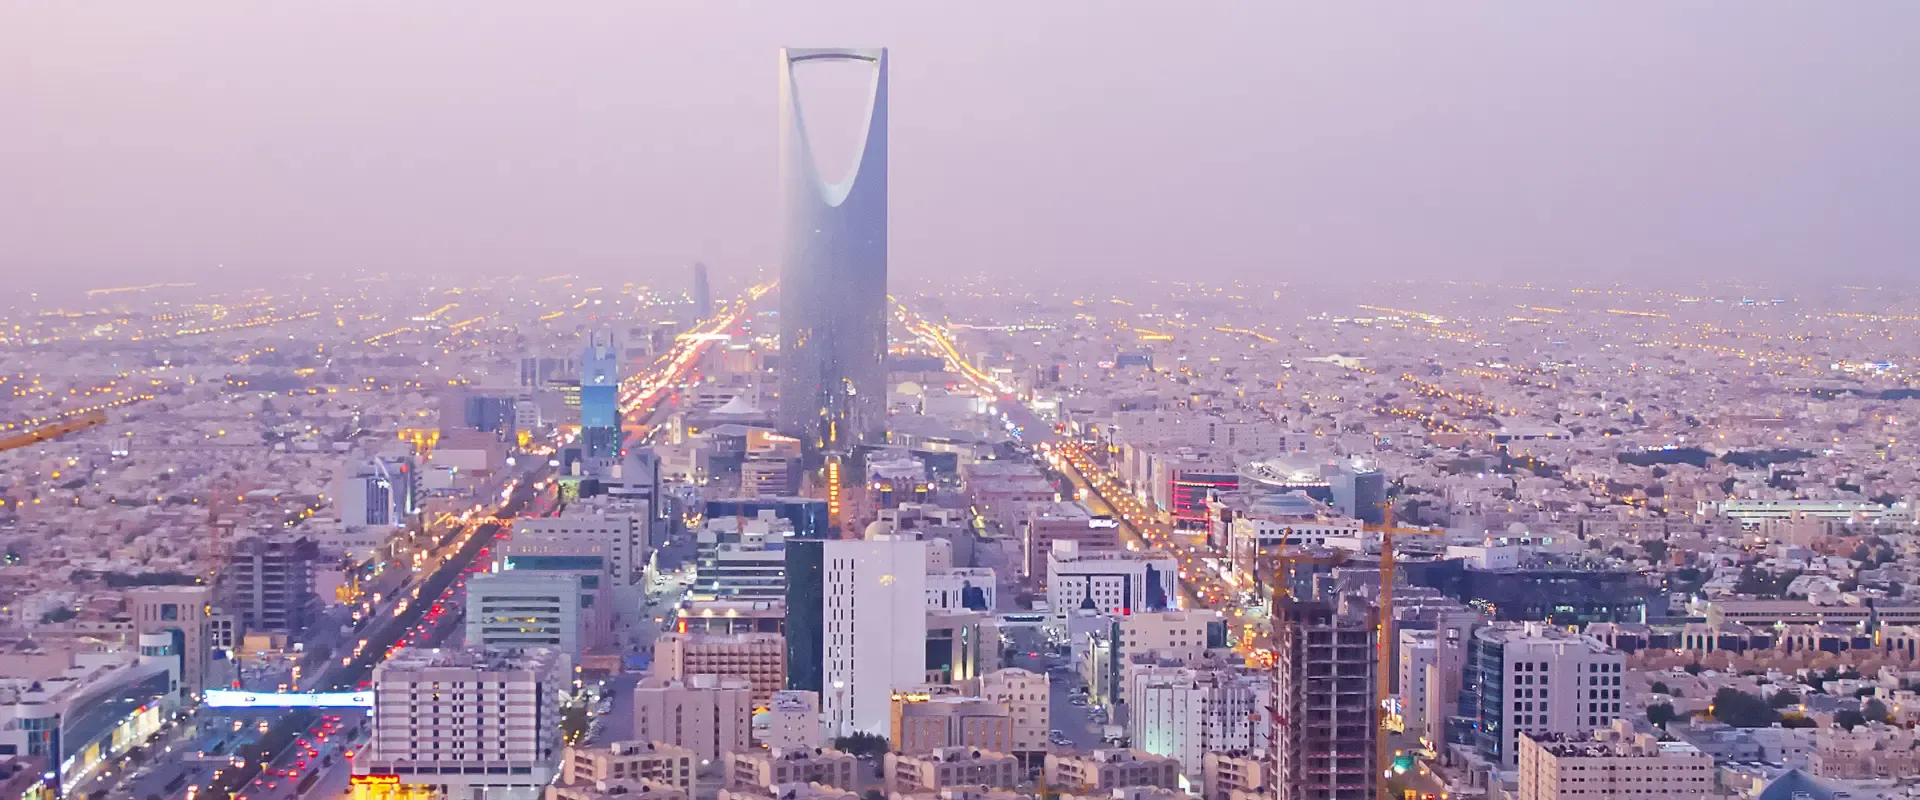 شركة Building Rank فرع المملكة العربية السعودية - شركة بلدنغ رانك - بلدنك رانك - بلدنق رانك - بلدنج رانك